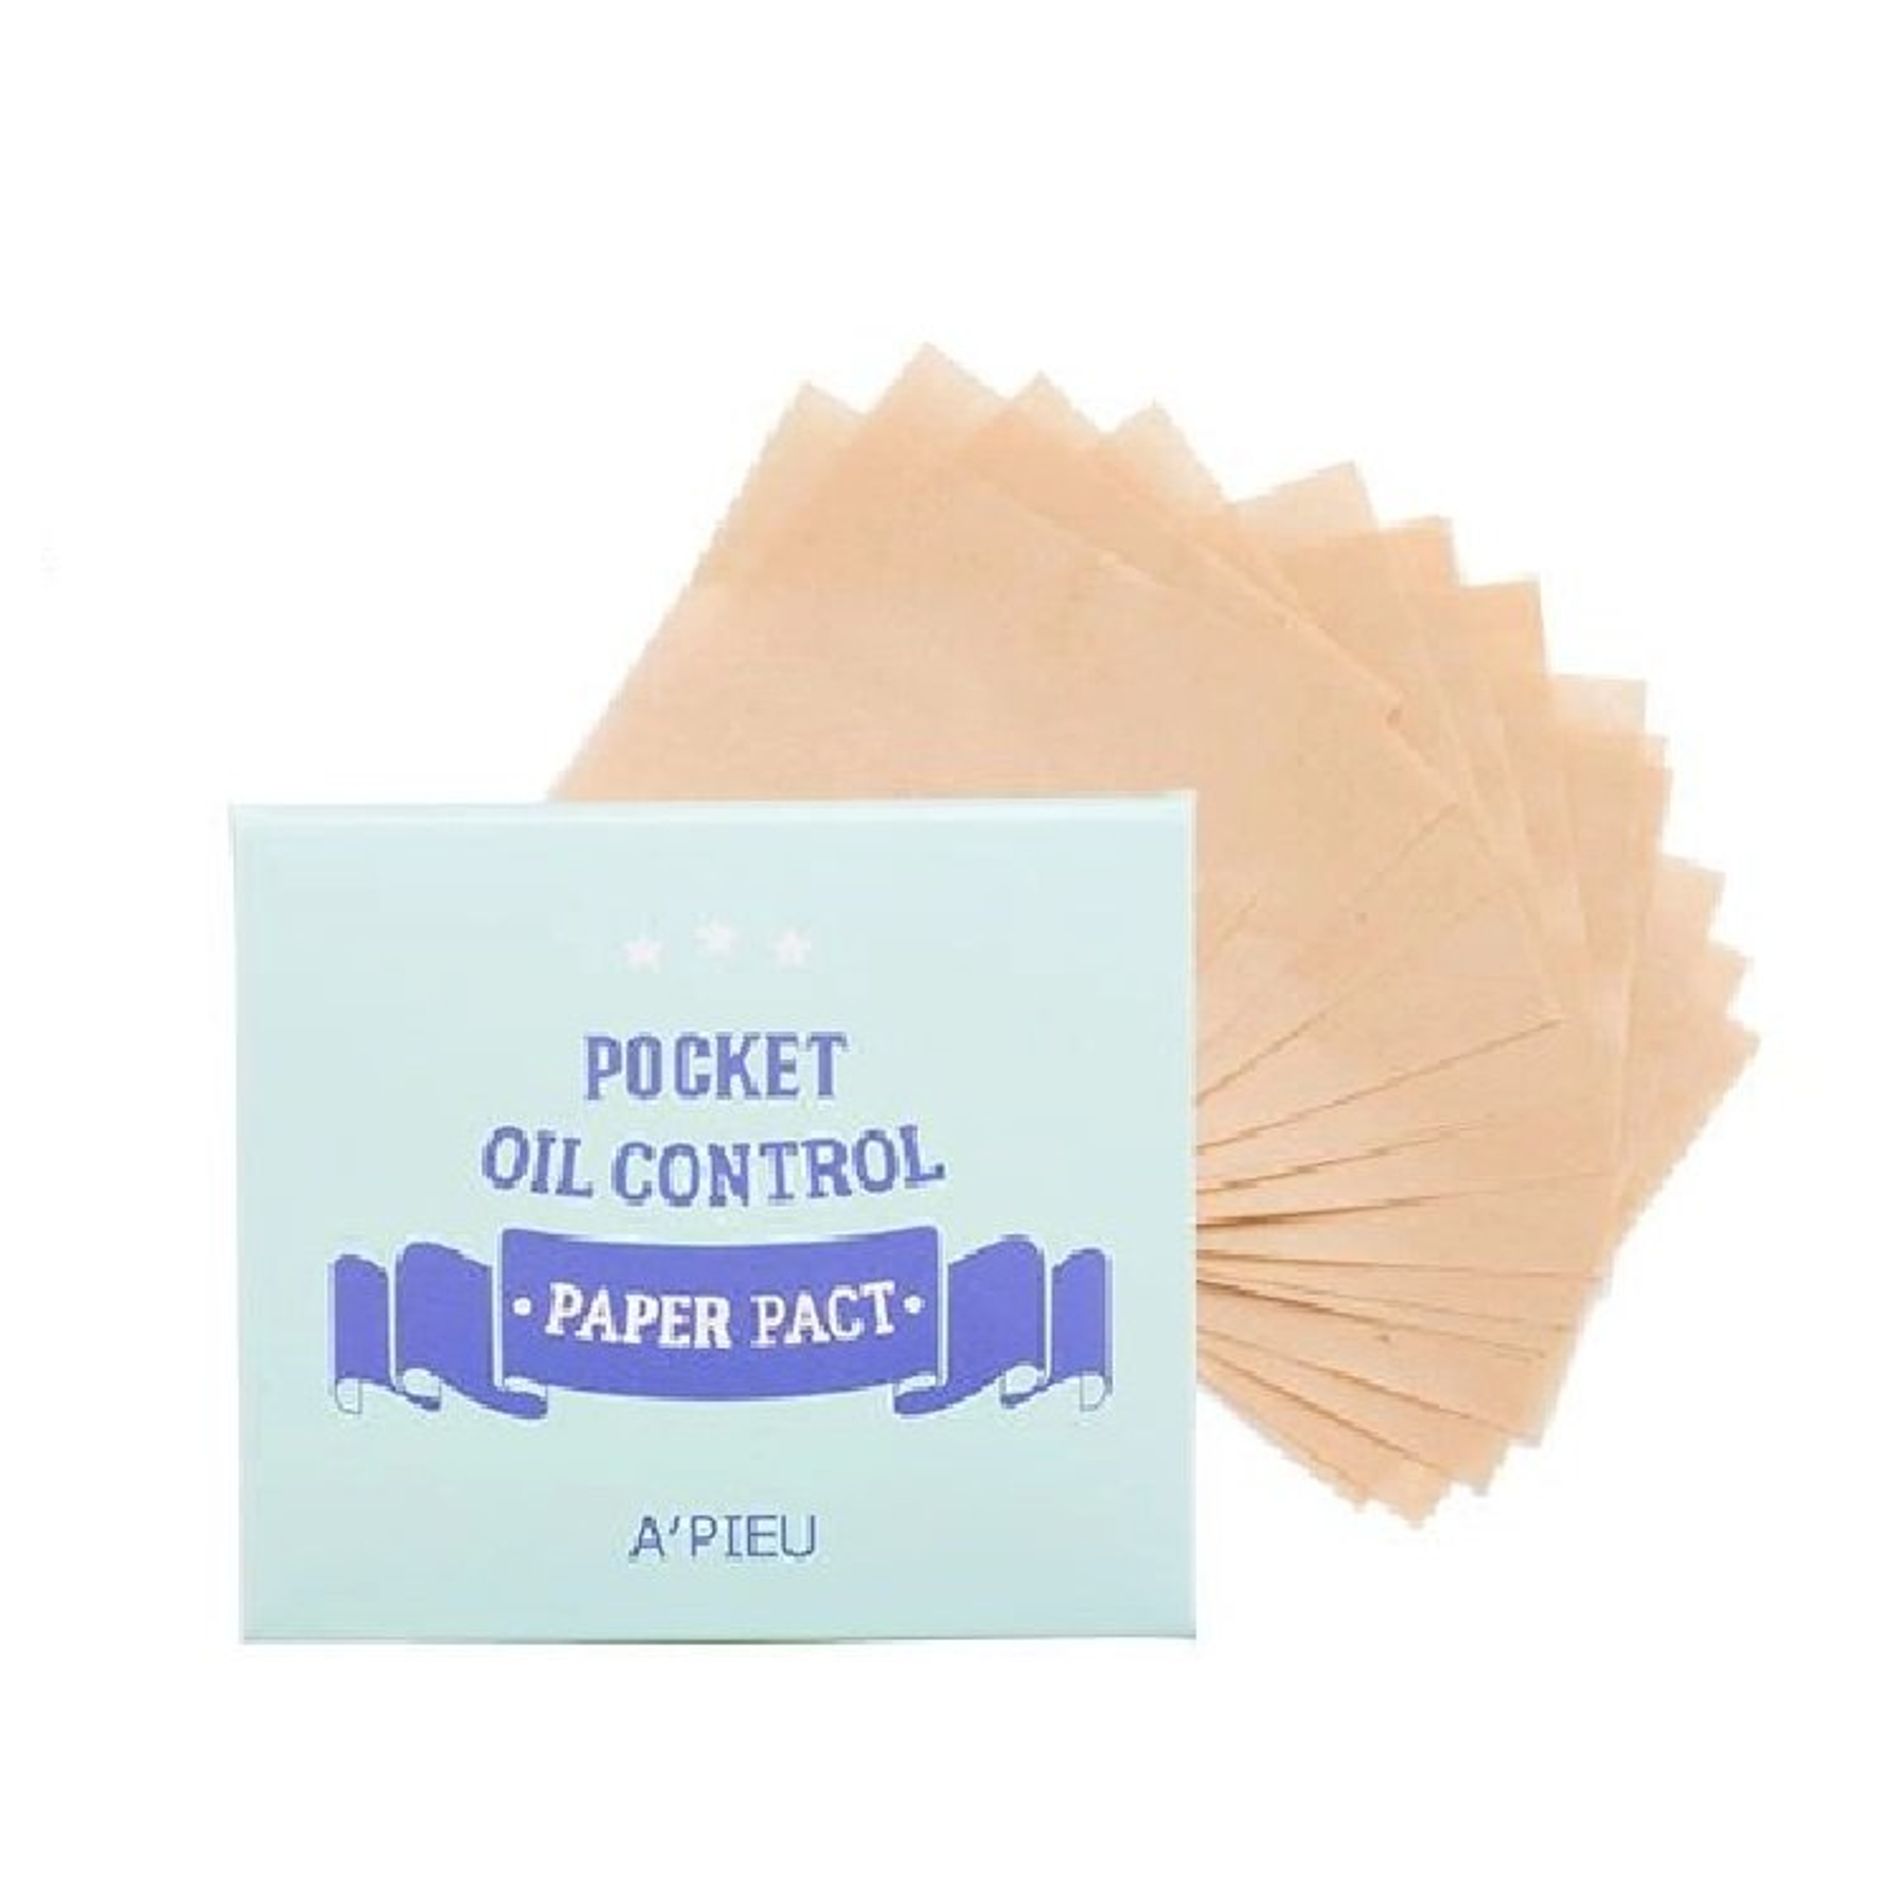 dung-cu-cho-da-mat-pocket-oil-control-paper-pact-a-pieu-pocket-oil-control-paper-pact-2